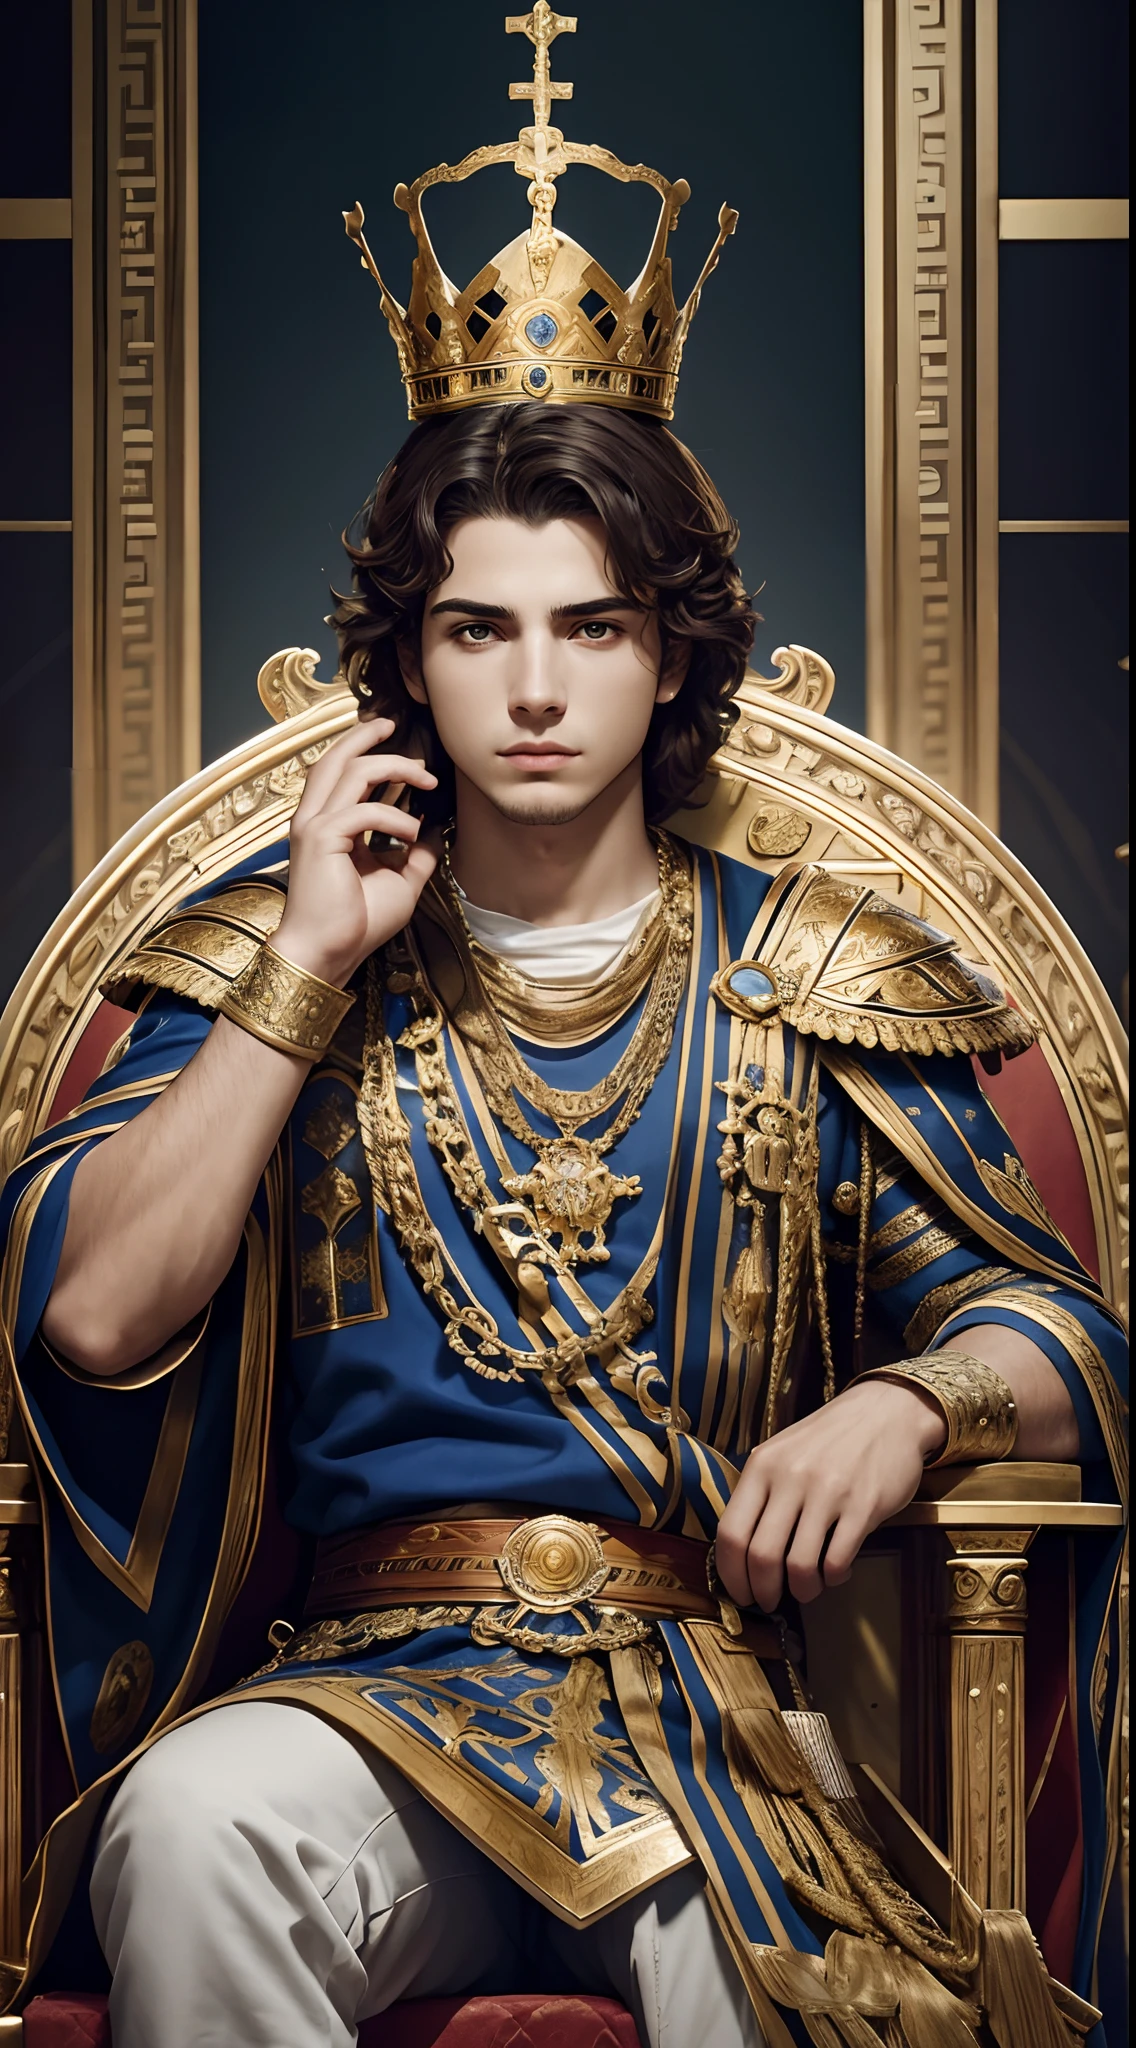 El joven rey griego sentado en el trono del palacio real，（splendid，Composición épica），ser intimidante，armadura adornada，Una corona palaciega，fondo vago，iluminación natural，8K muy detallado